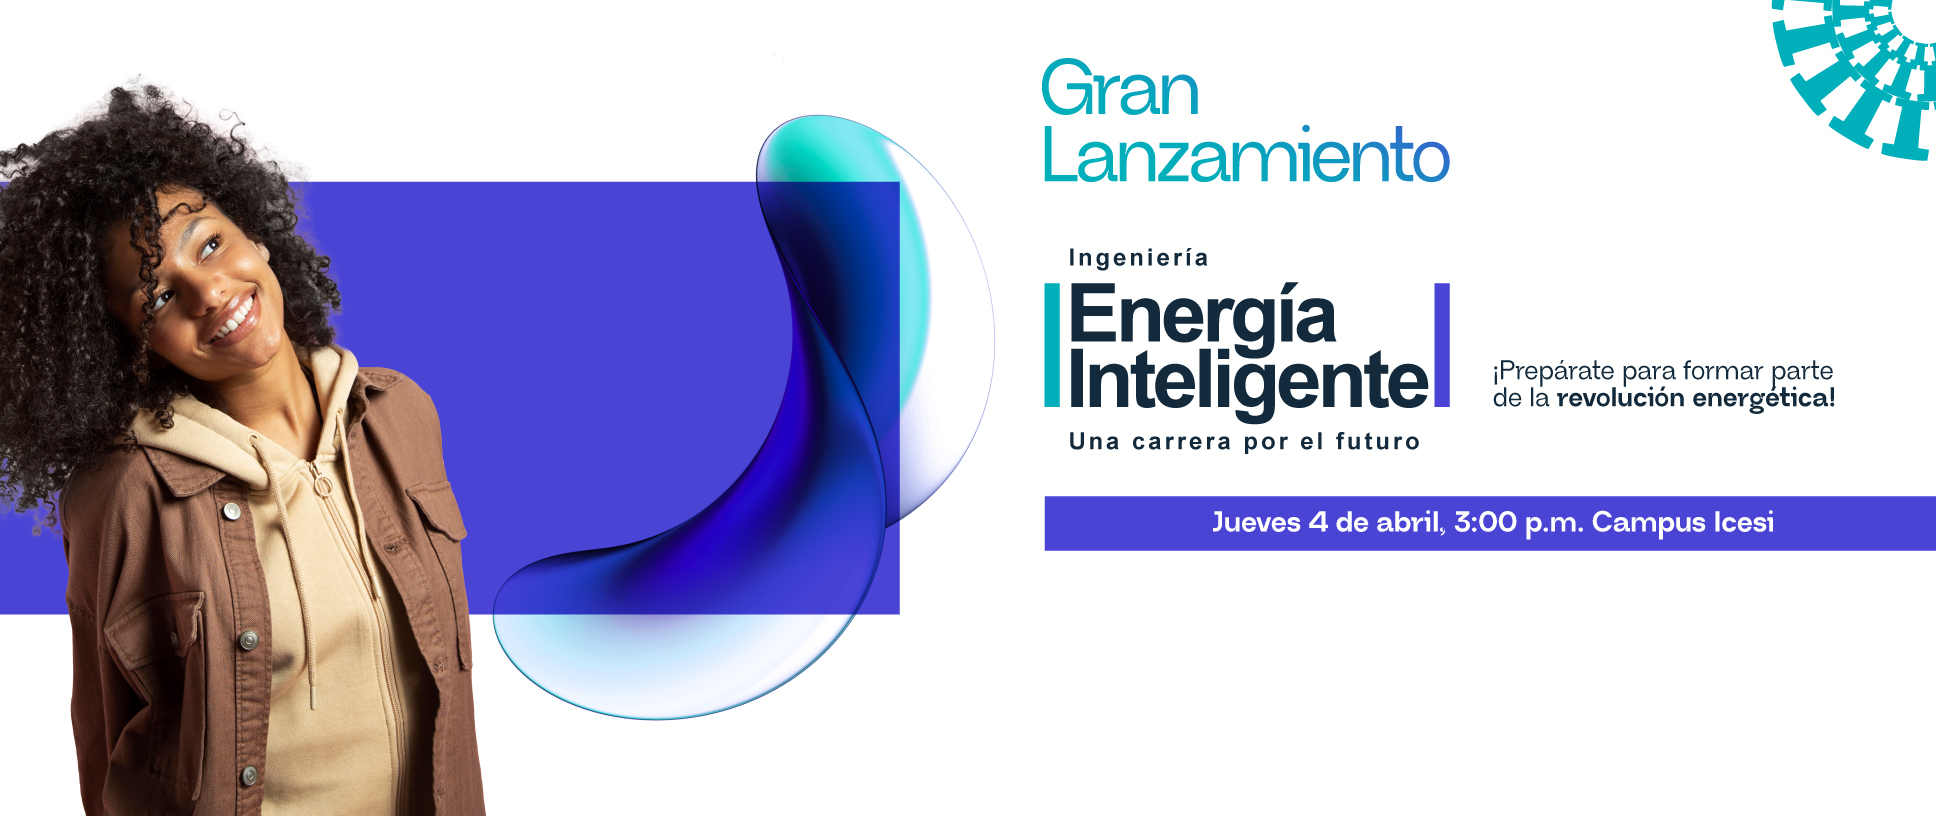 ¡Prepárate para formar parte de la revolución energética con la nueva Ingeniería en Energía Inteligente!